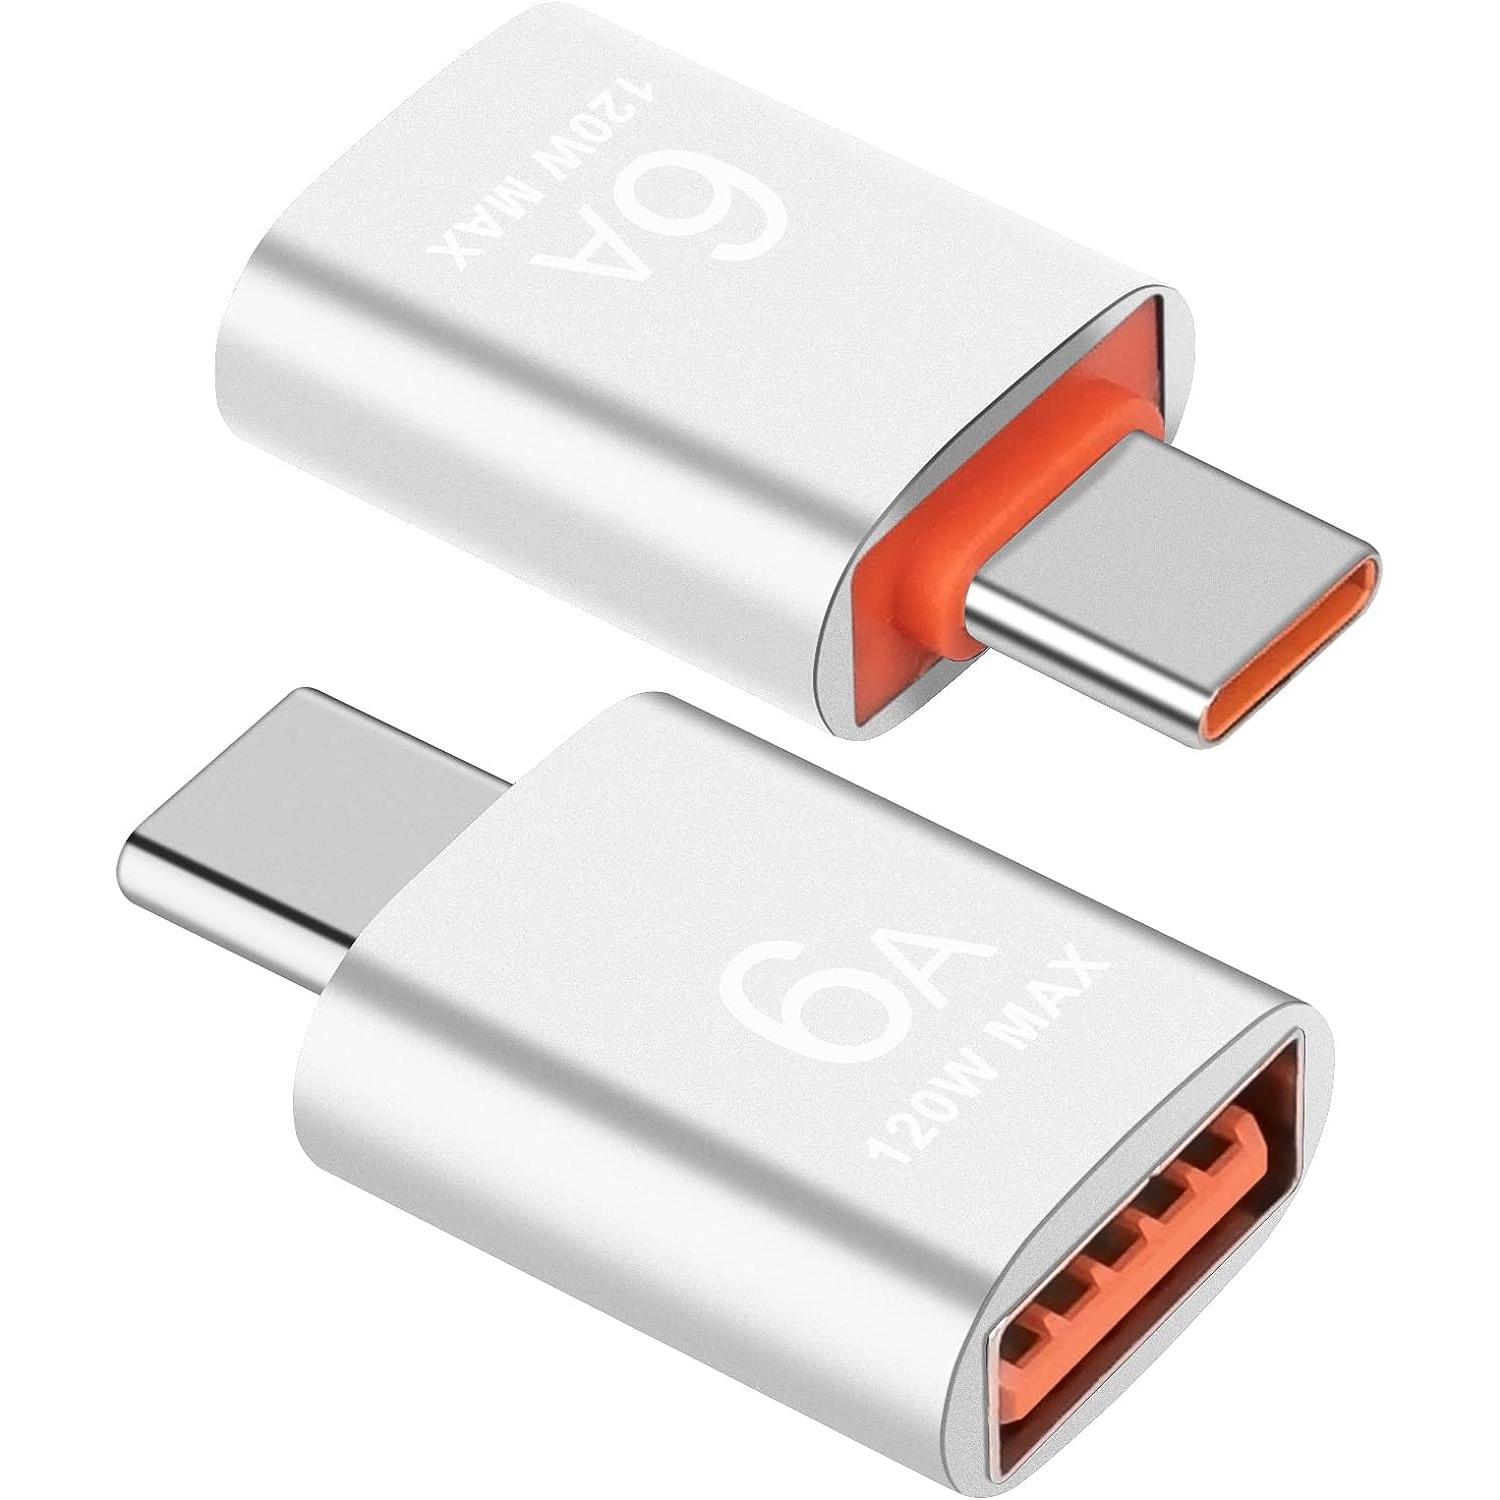 nonda Adaptador USB C a USB 3.0 (paquete de 2), adaptador USB a USB C, USB  tipo C a USB, adaptador Thunderbolt 4/3 a USB hembra OTG para MacBook